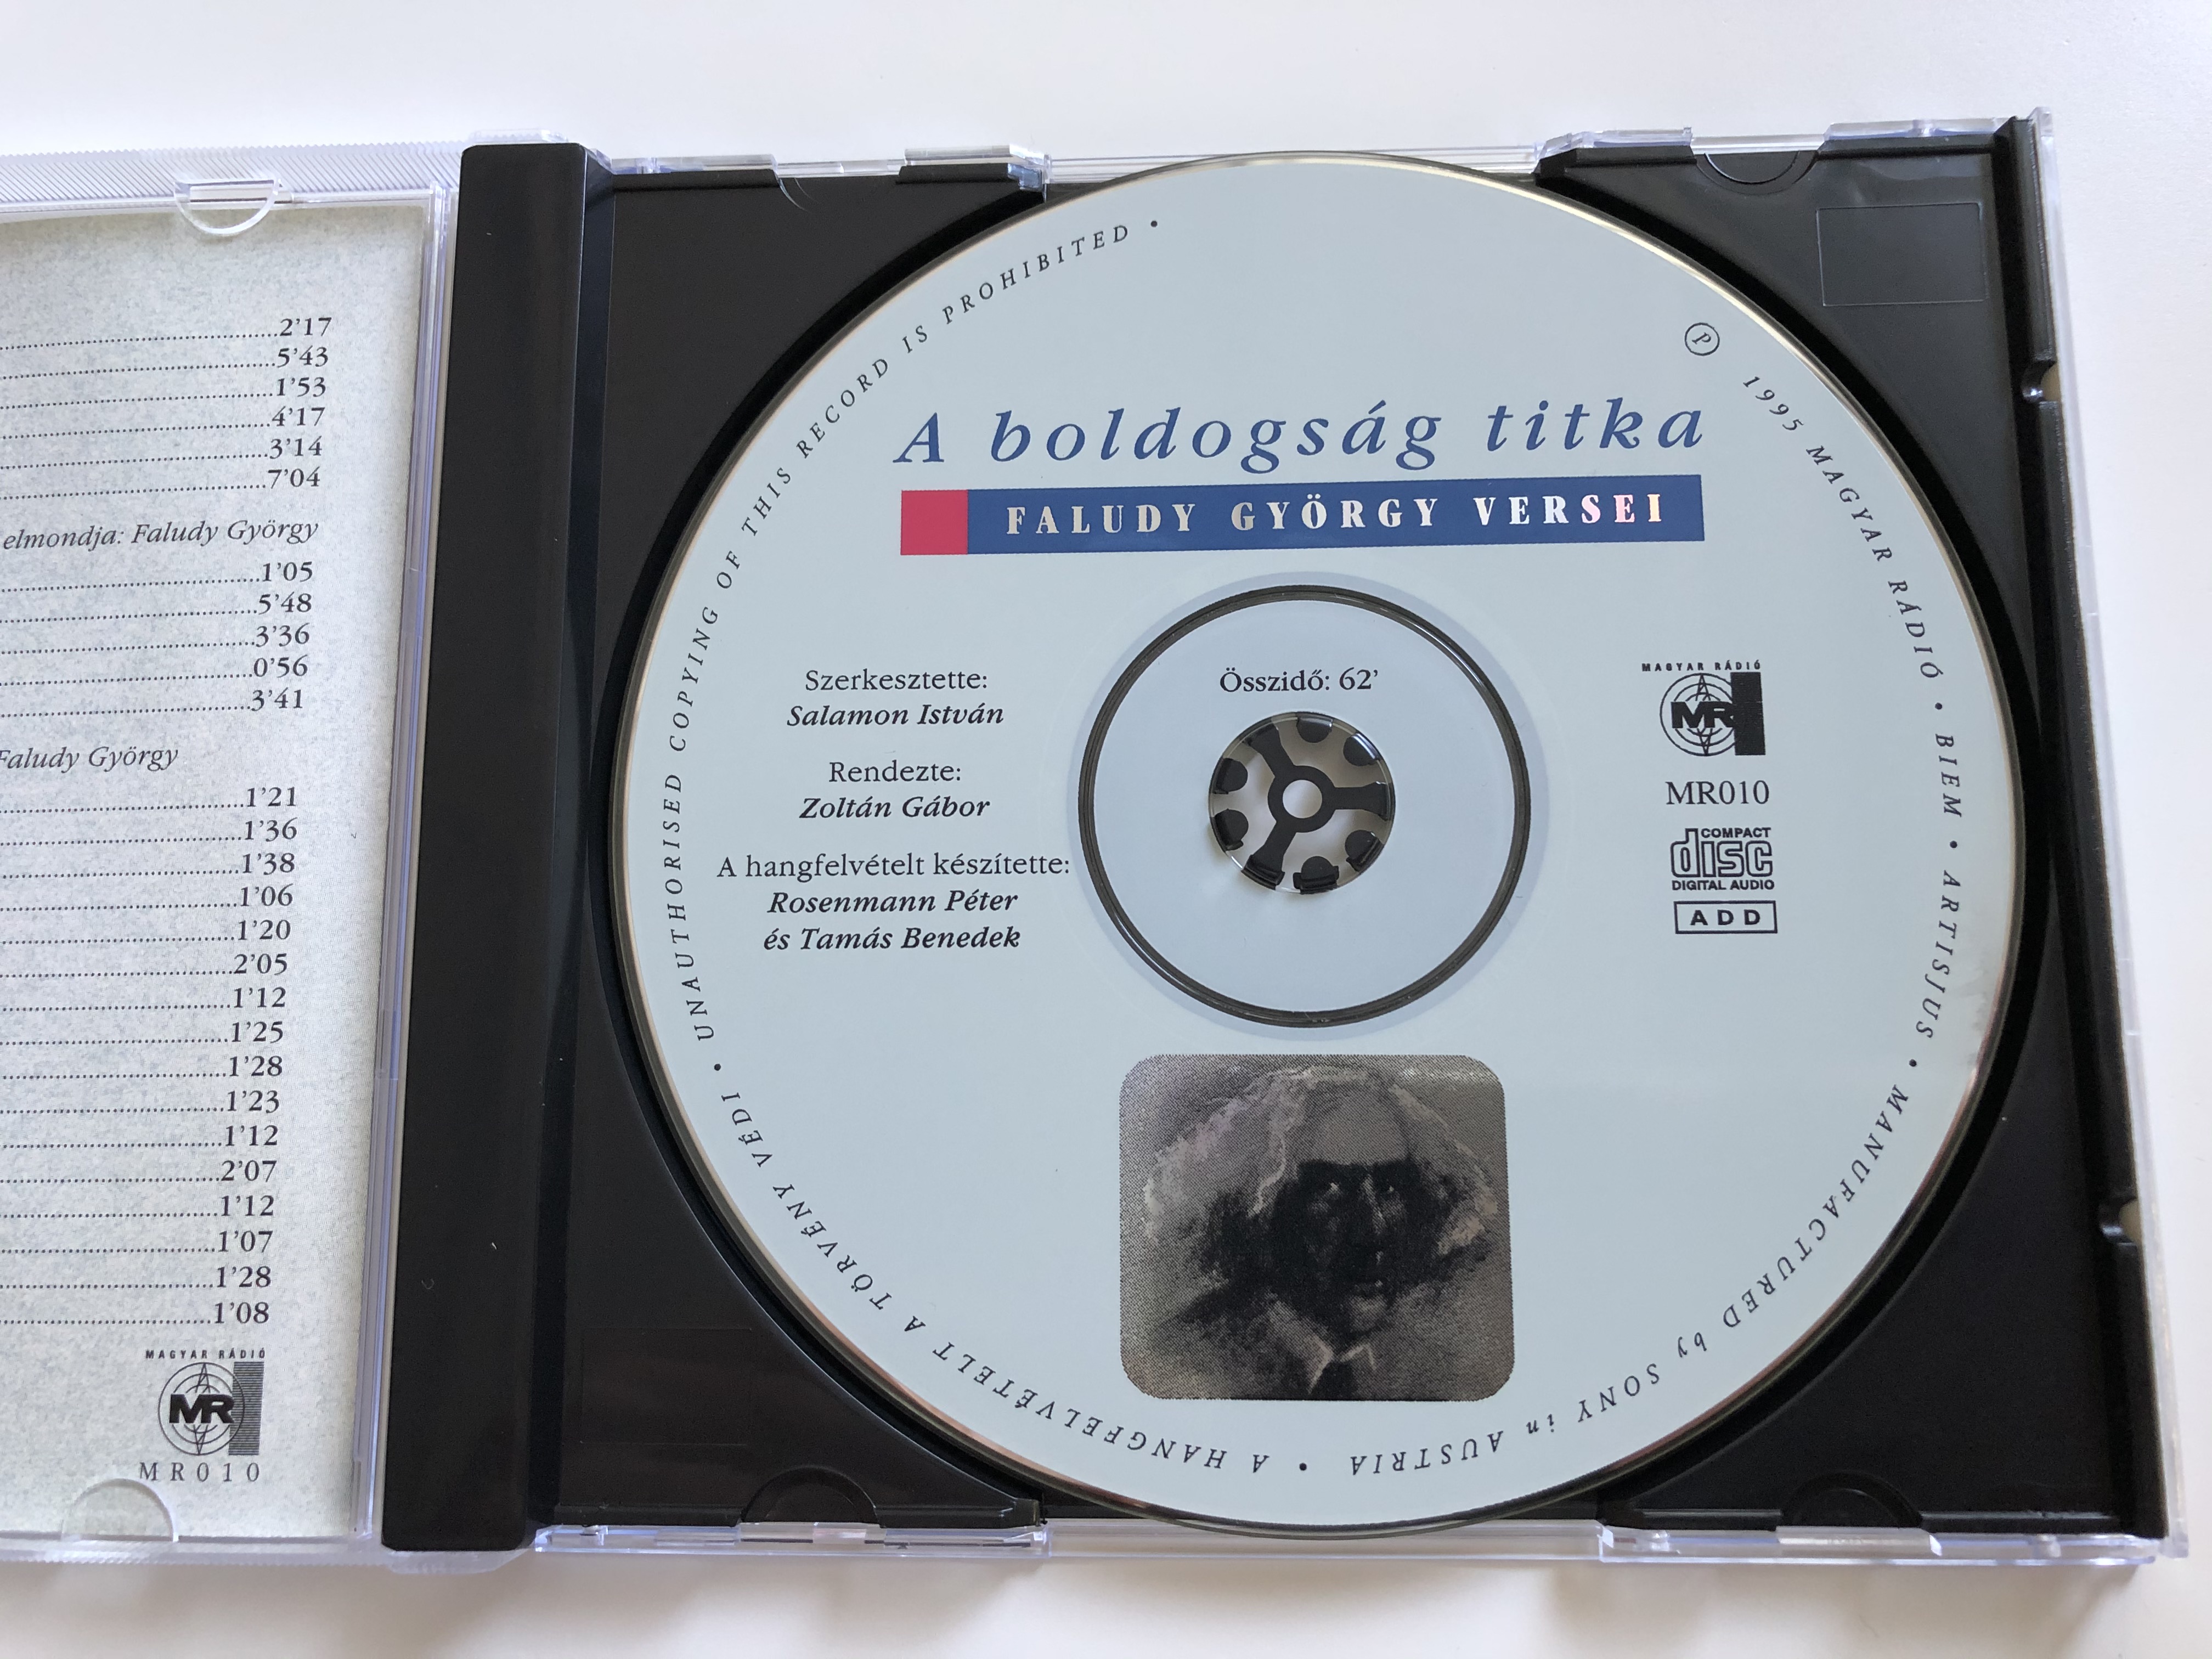 faludy-gy-rgy-a-boldogs-g-titka-faludi-gy-rgy-versei-magyar-r-di-audio-cd-1995-mr010-4-.jpg